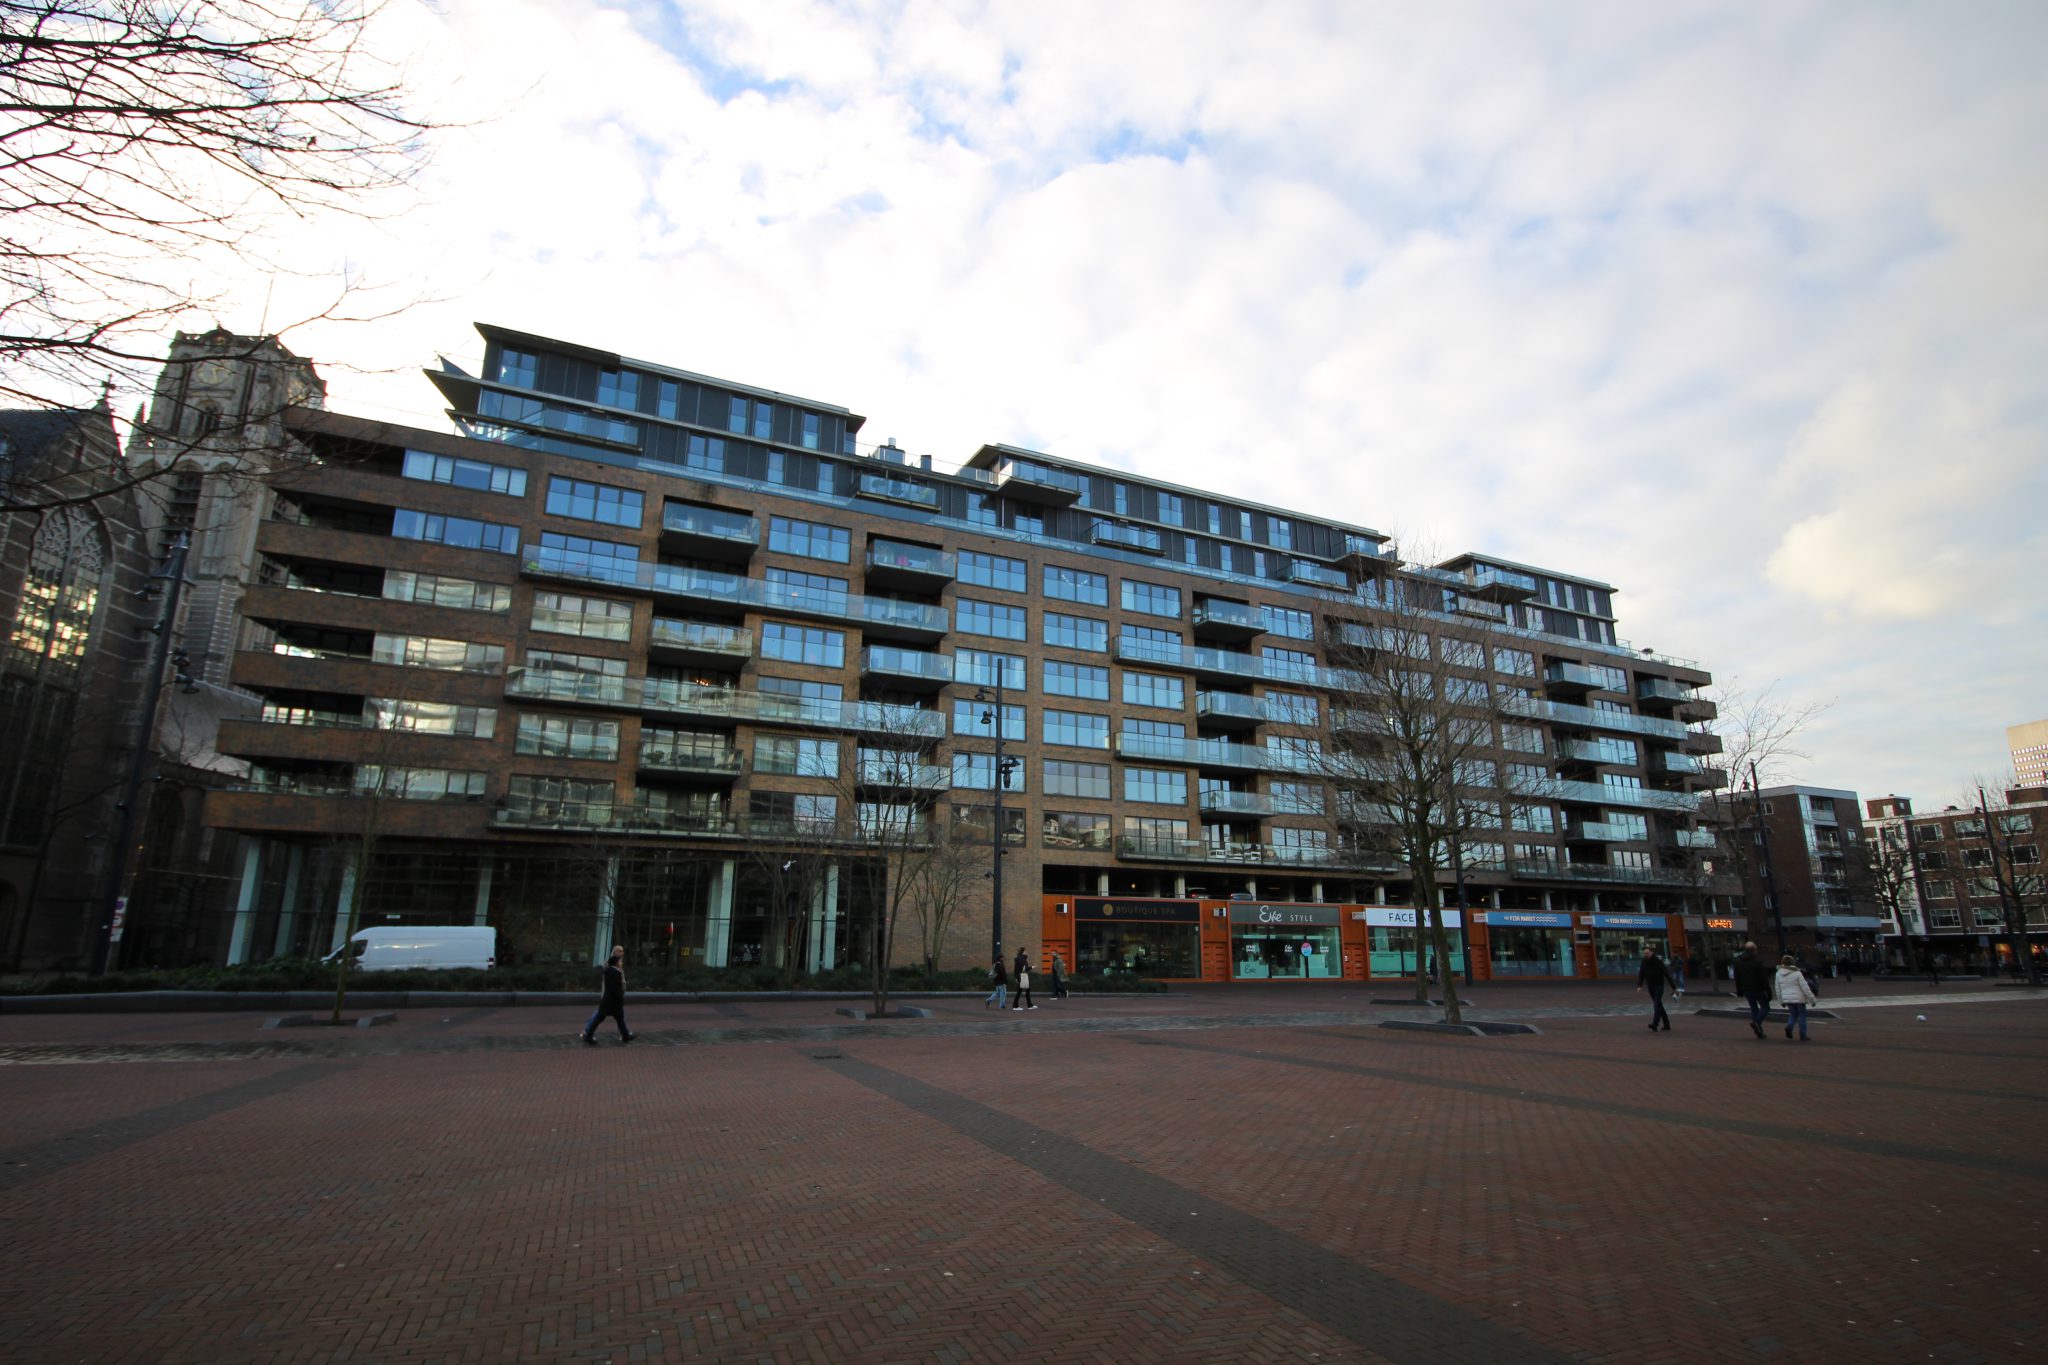 Bekijk foto 1/24 van apartment in Rotterdam